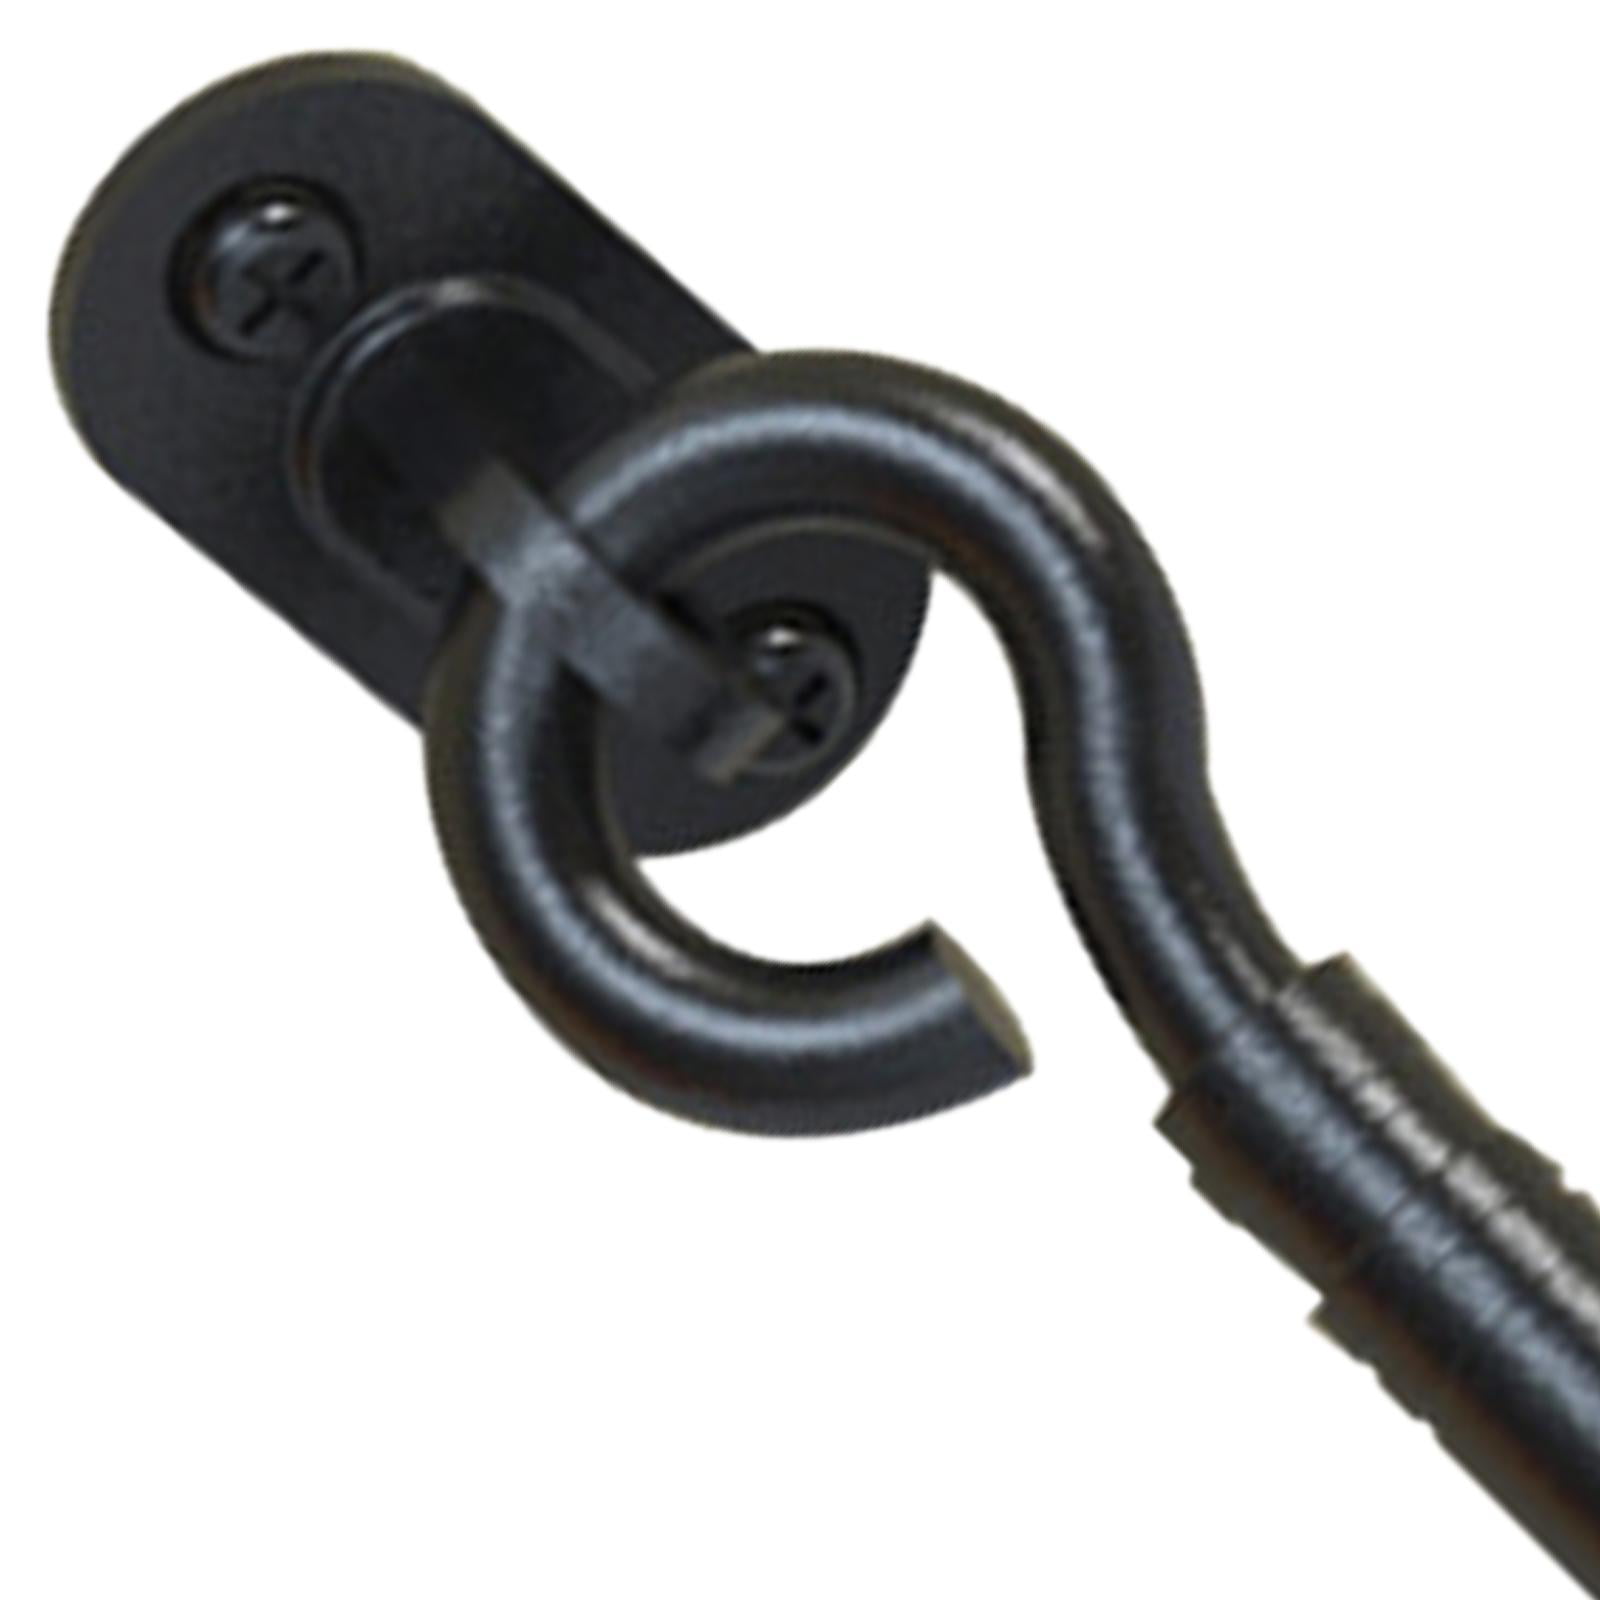 4'' Hook and Eye Latch Stainless Steel Heavy Duty Barn Door Lock with  Screws for Bedroom Gate Bathroom Garage , Black 